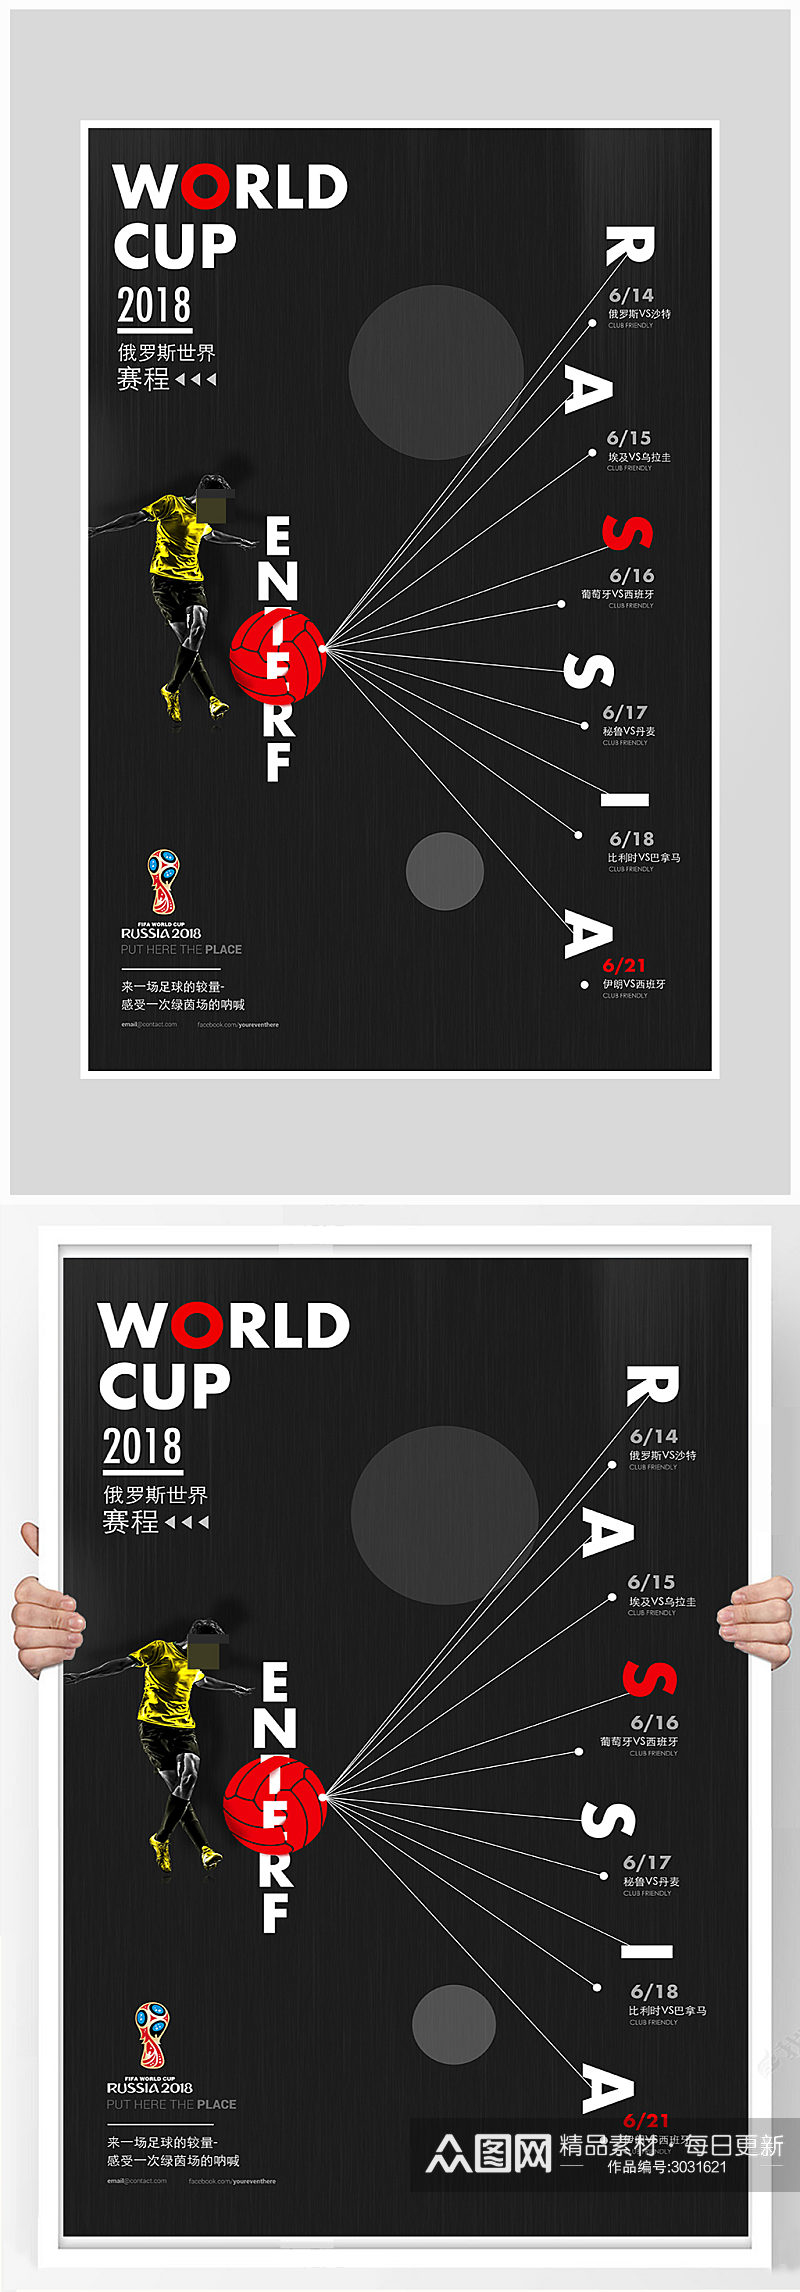 简约足球世界杯比赛海报设计素材